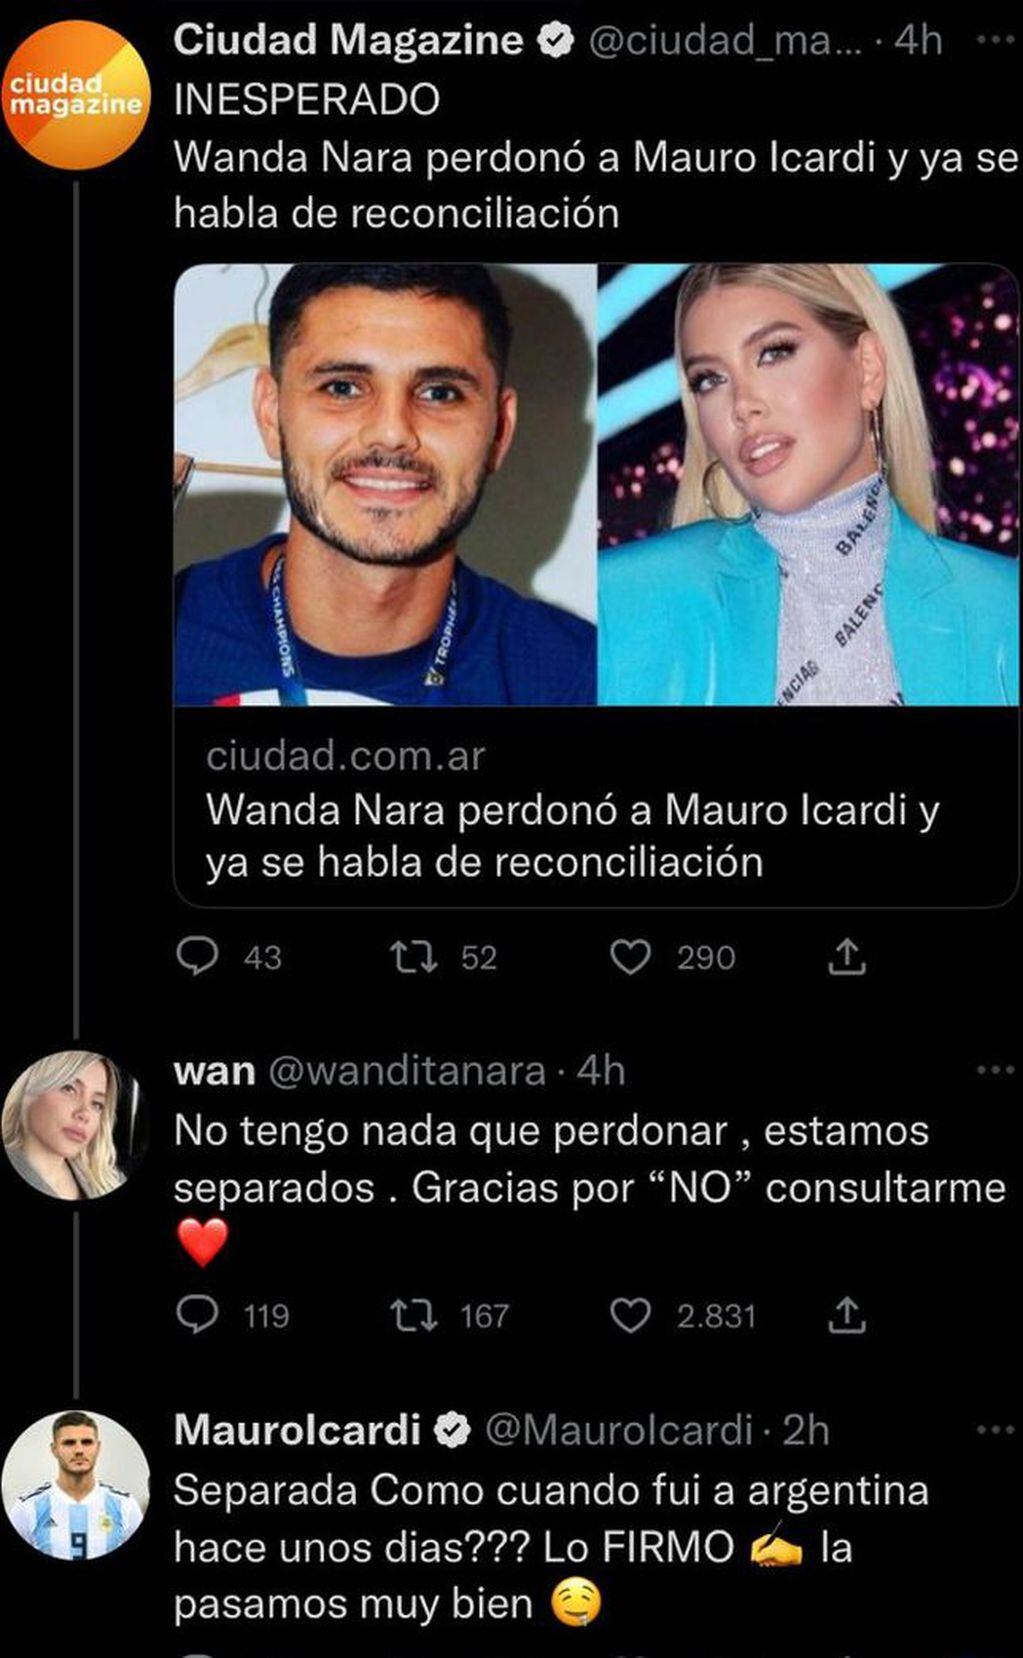 El curioso intercambio entre Wanda Nara y Mauro Icardi en Twitter.